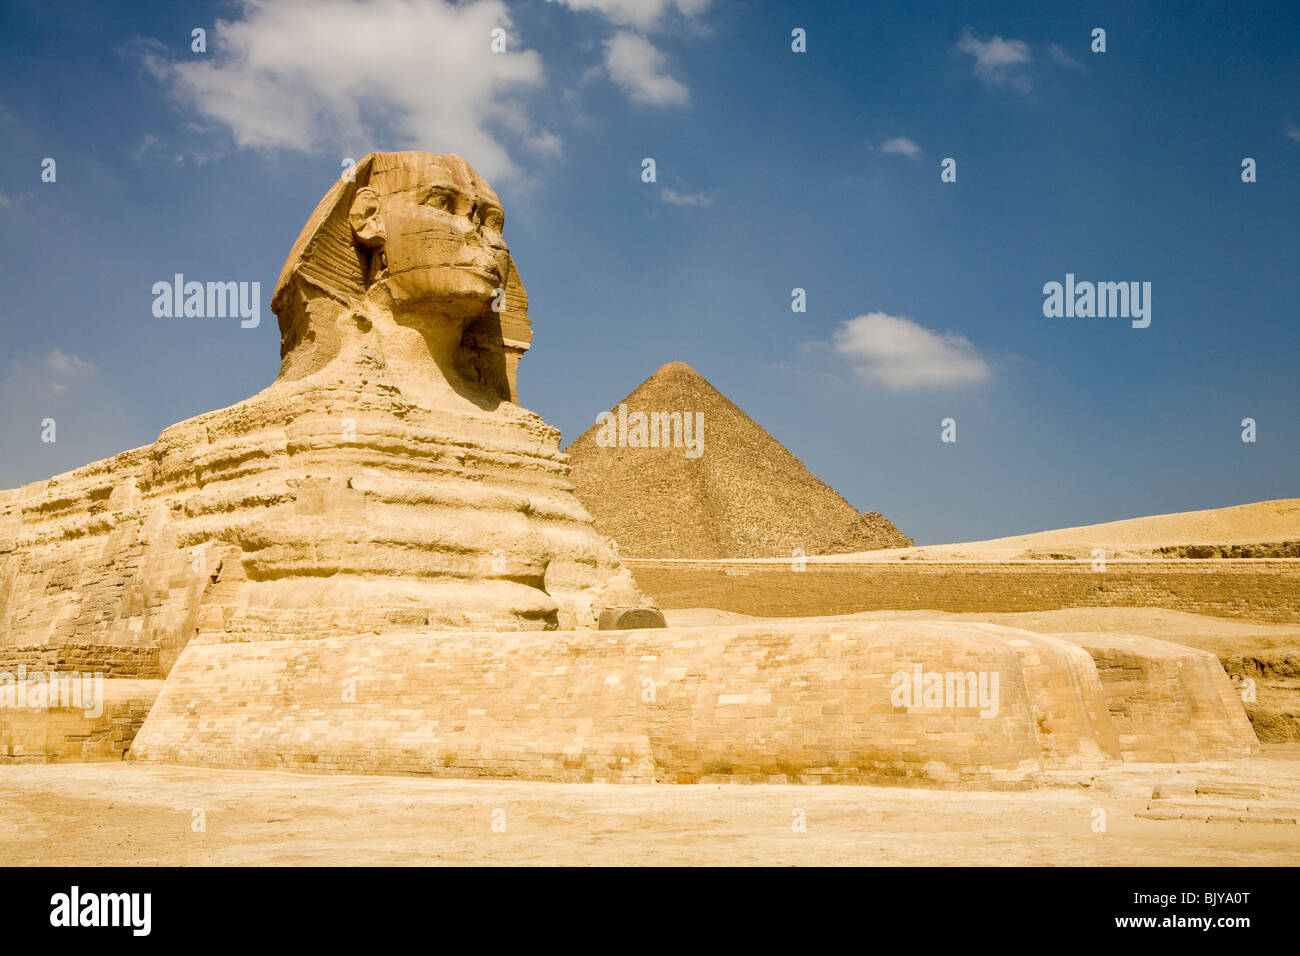 Die große Sphinx von Gizeh, gesehen aus dem Sphinx-Gehäuse mit Pyramide des Cheops im Hintergrund, Kairo, Ägypten Stockfoto